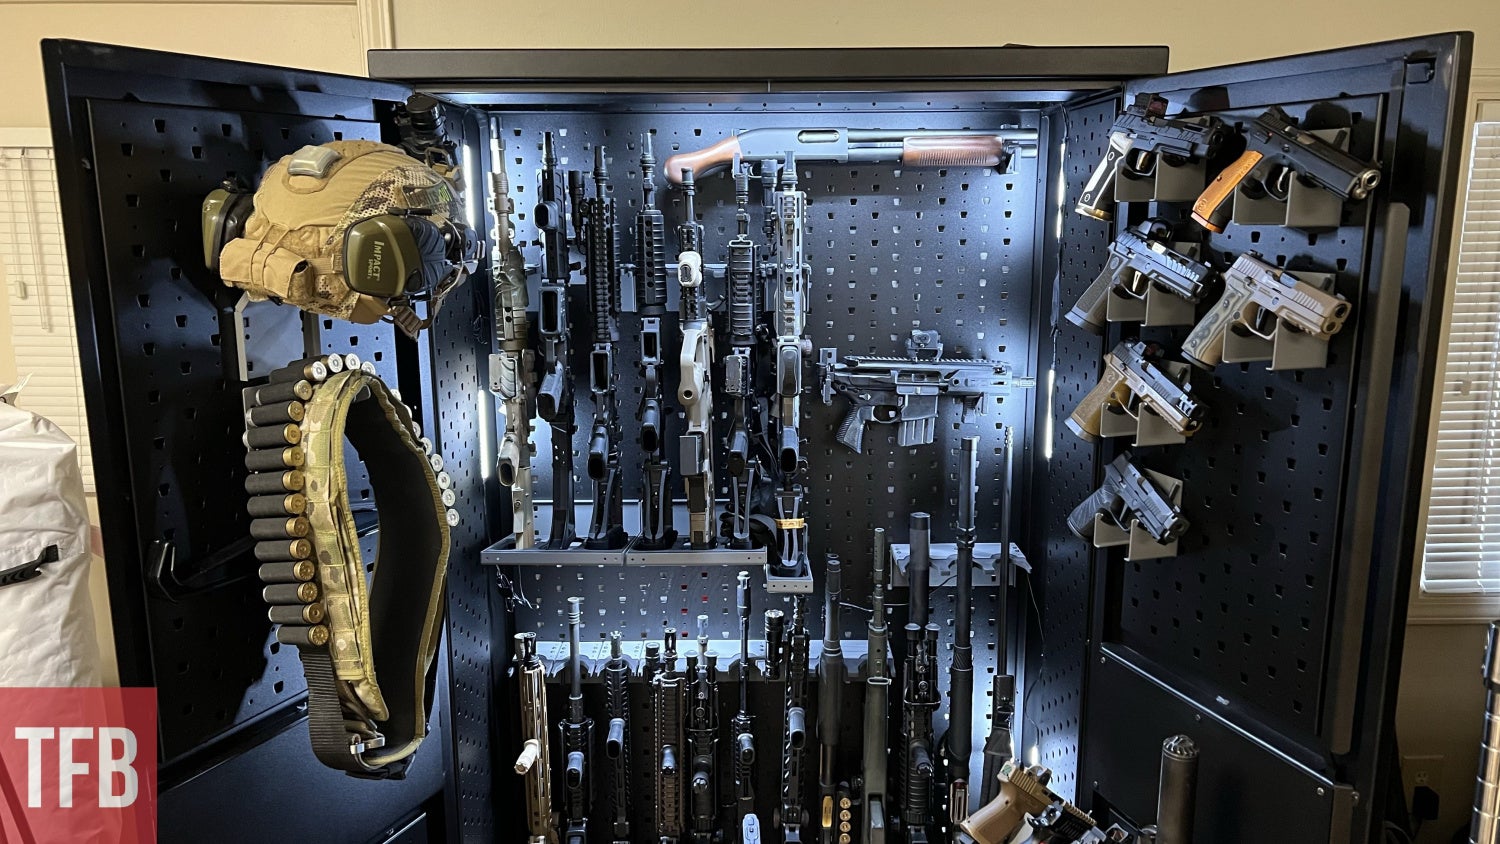  SecureIt Gun Storage Gun Safe Kit: Steel 12 Safely